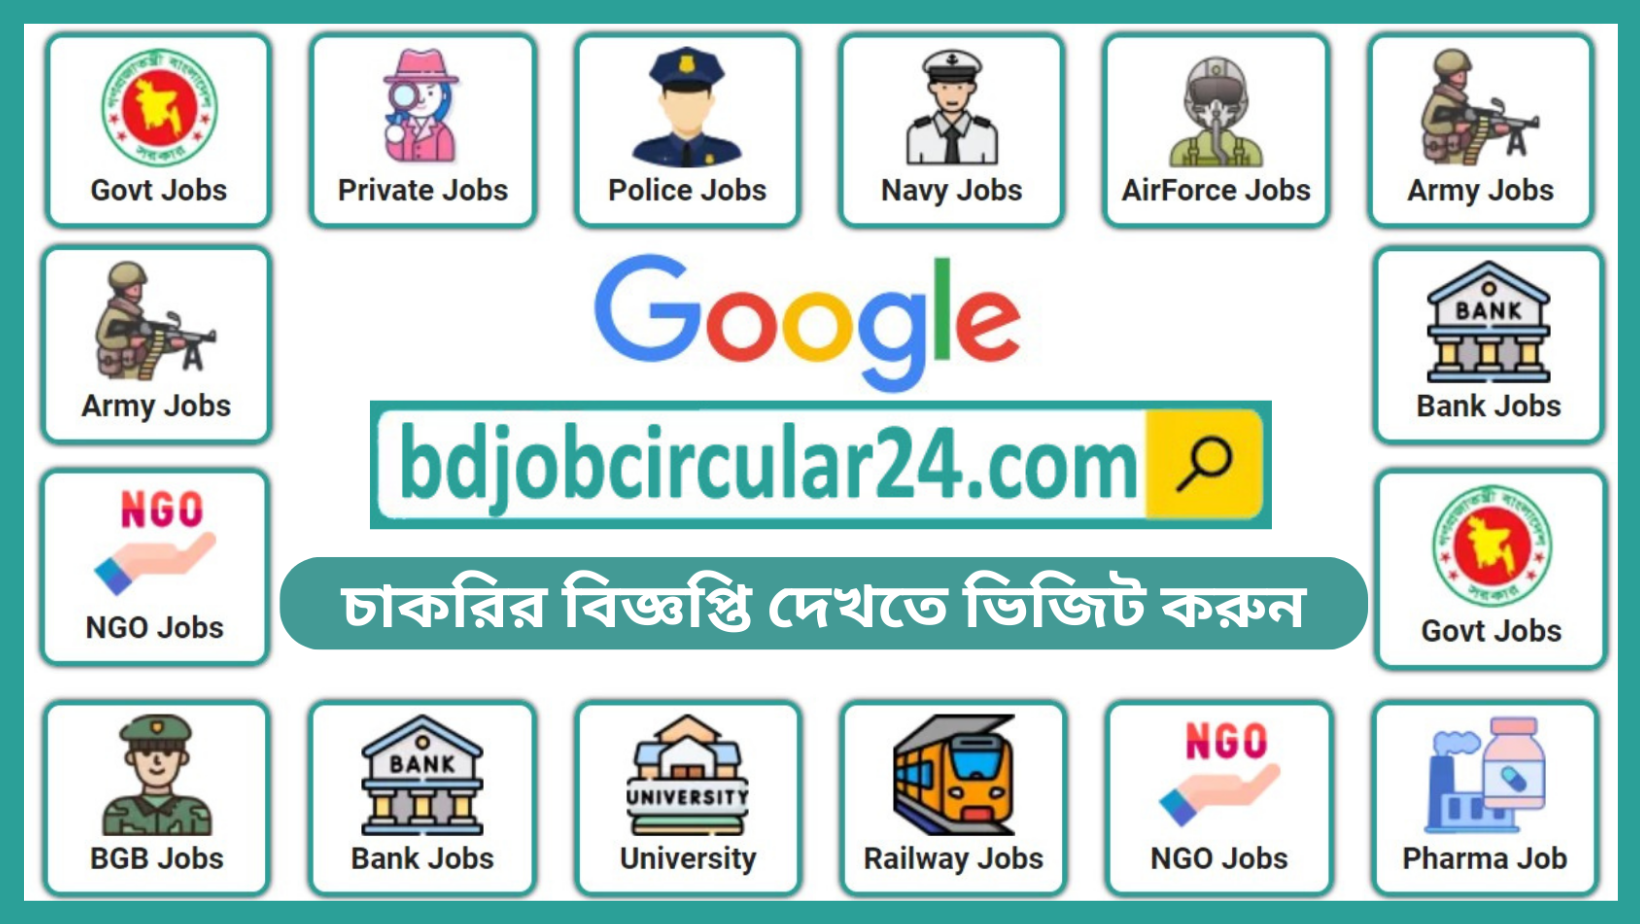 BD Job Circular 24 is No #1 Job Portal Site in Bangladesh